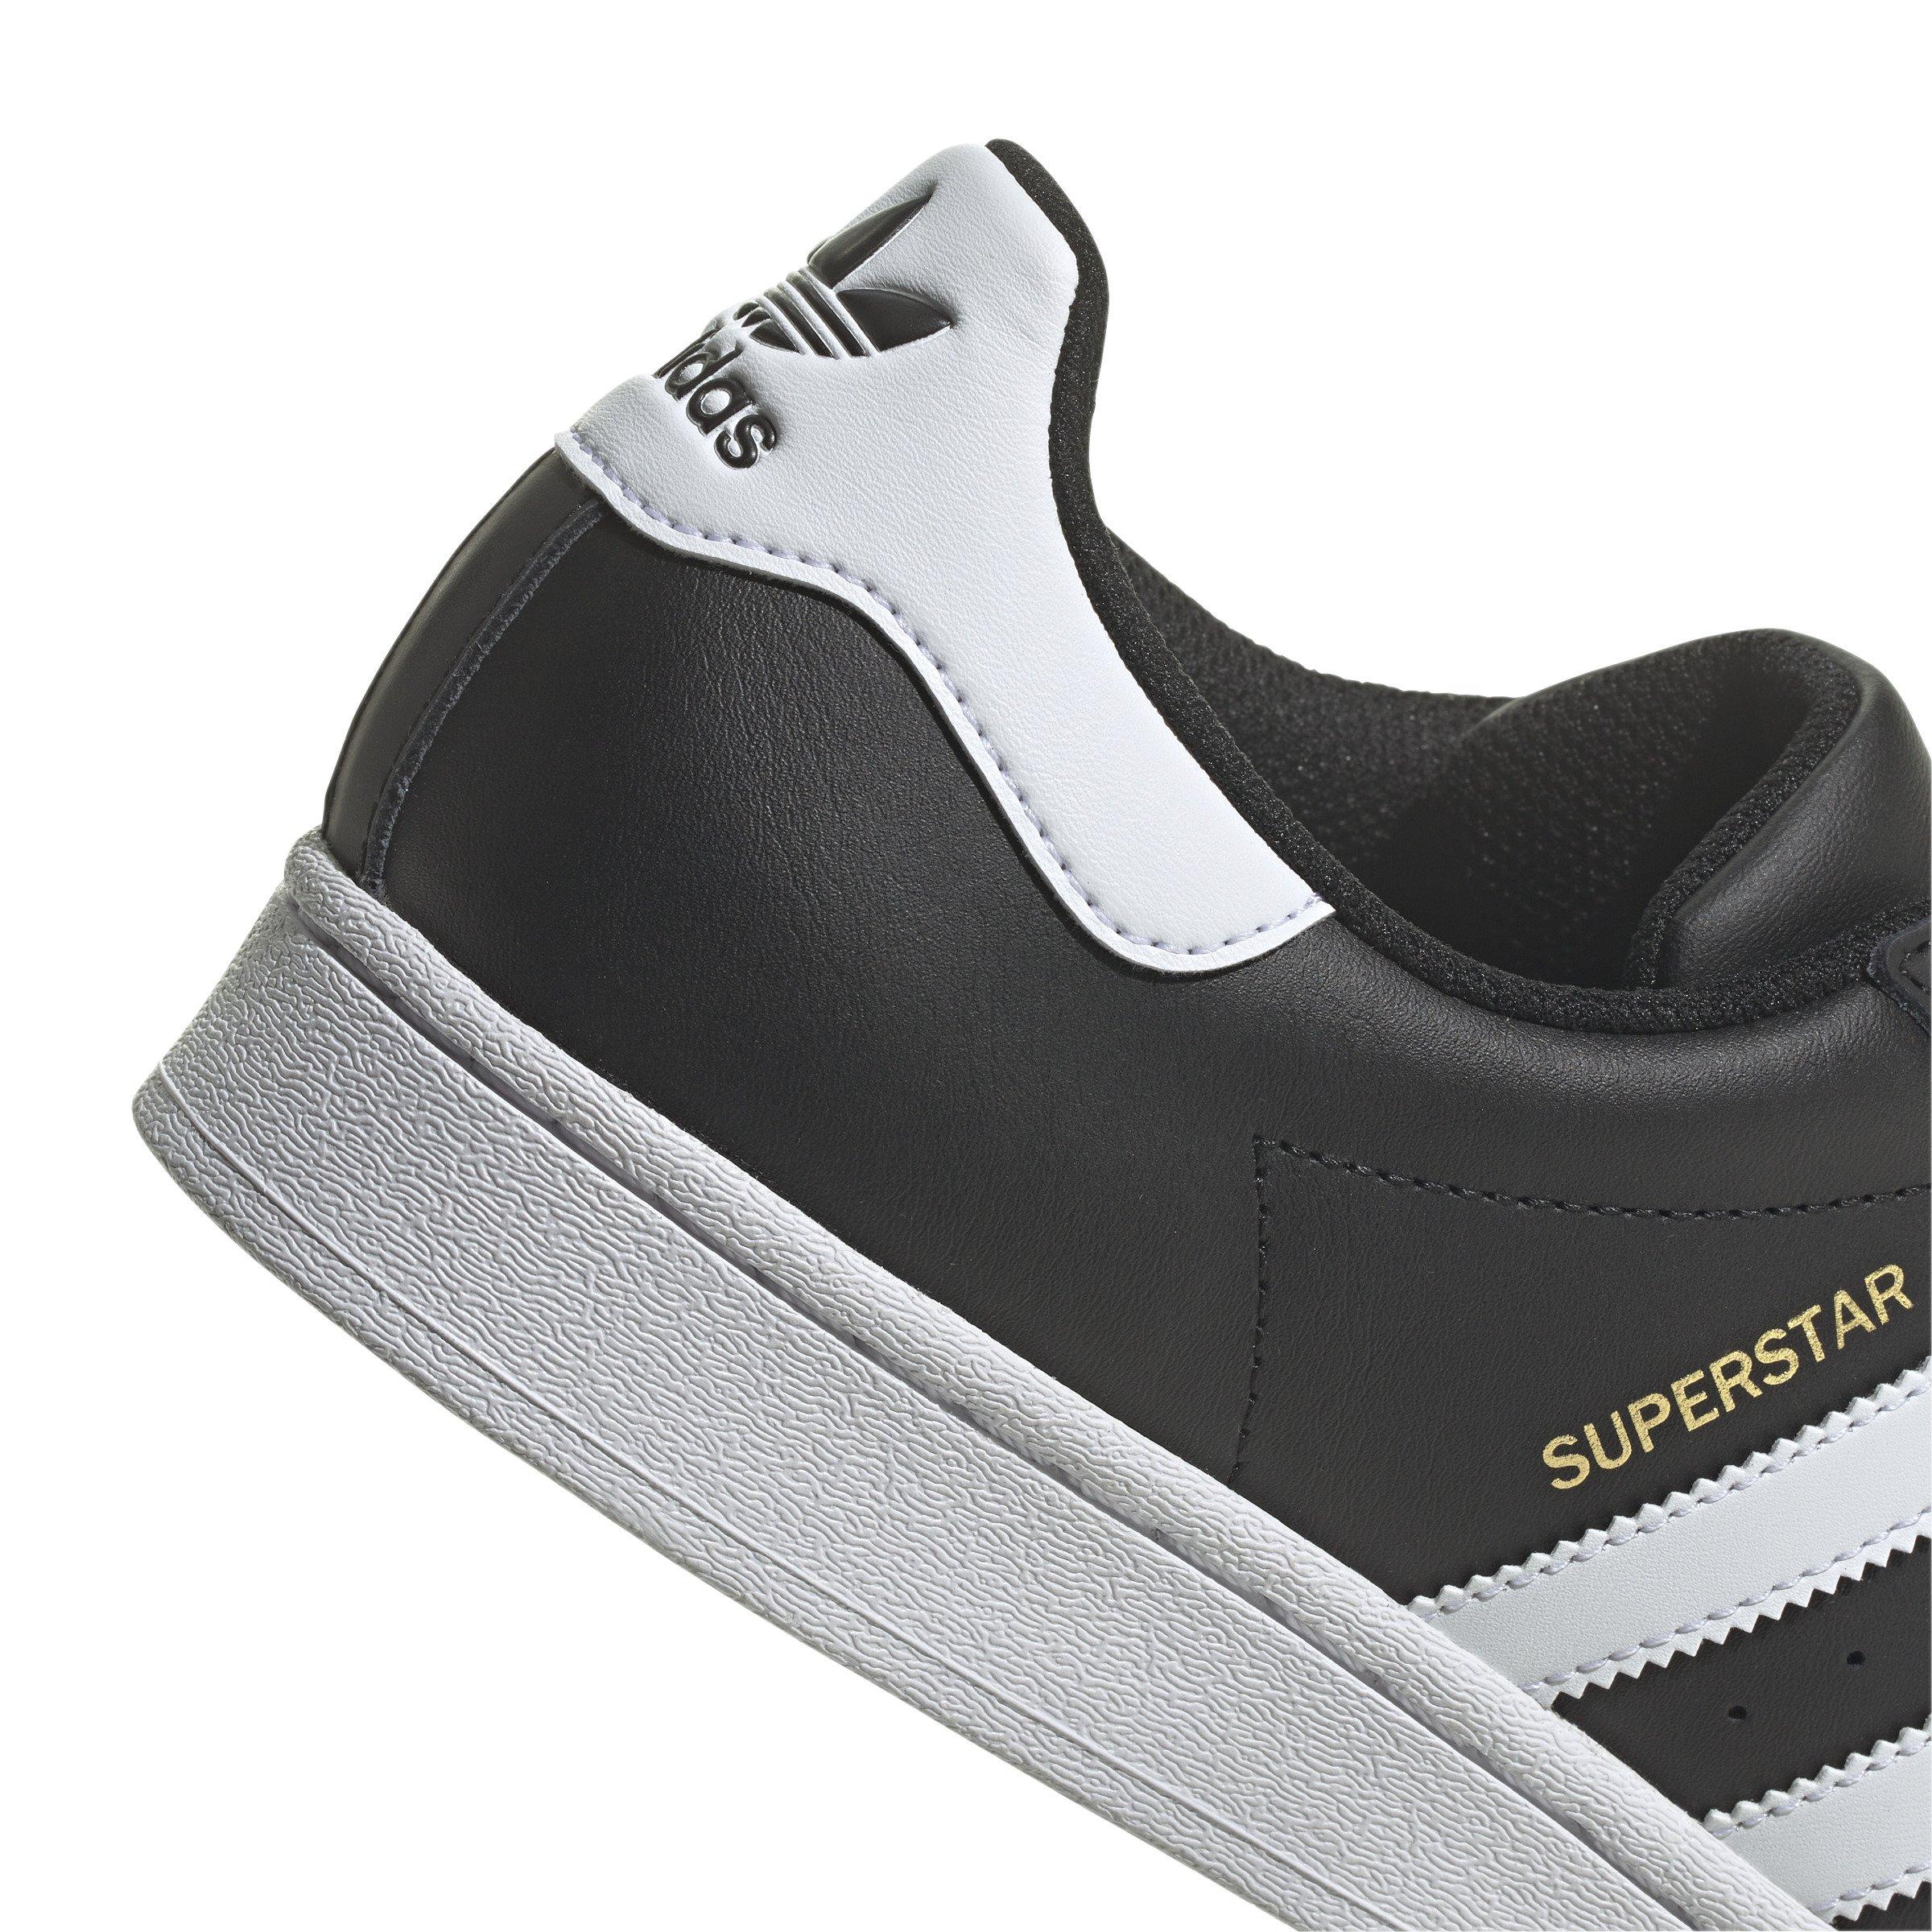 Men's shoes adidas Superstar Core Black/ Ftw White/ Core Black